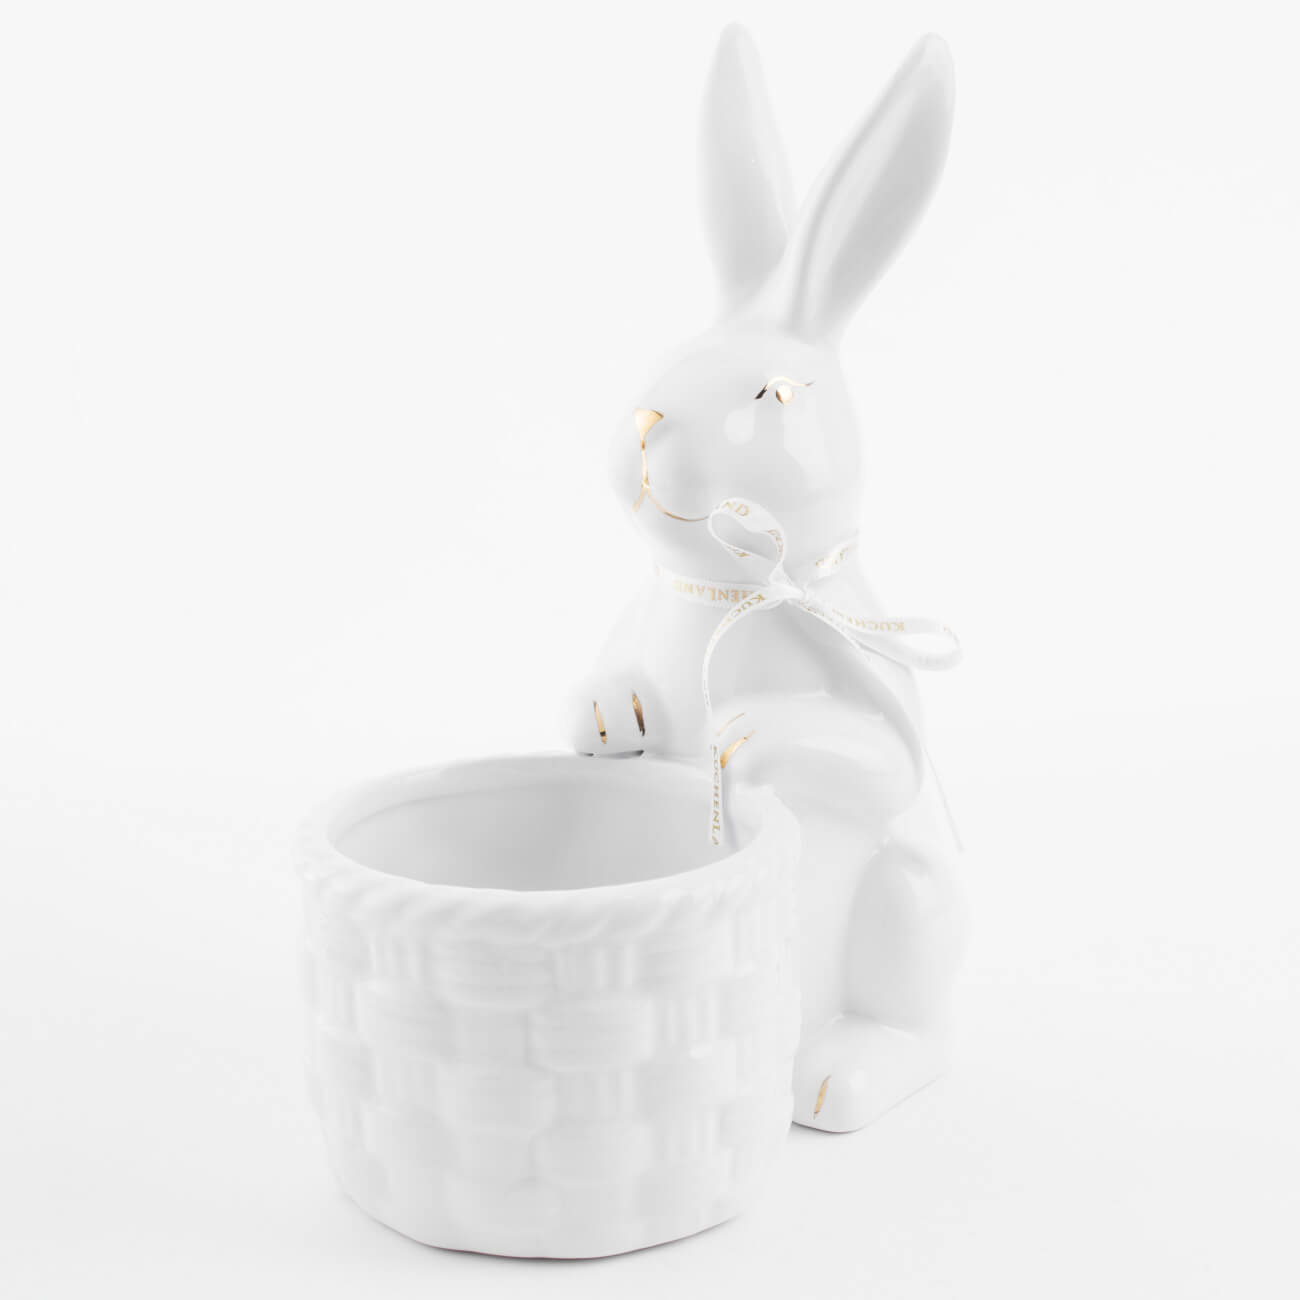 Конфетница, 18x23 см, керамика, белая, Кролик с плетенной корзиной, Easter gold - фото 1